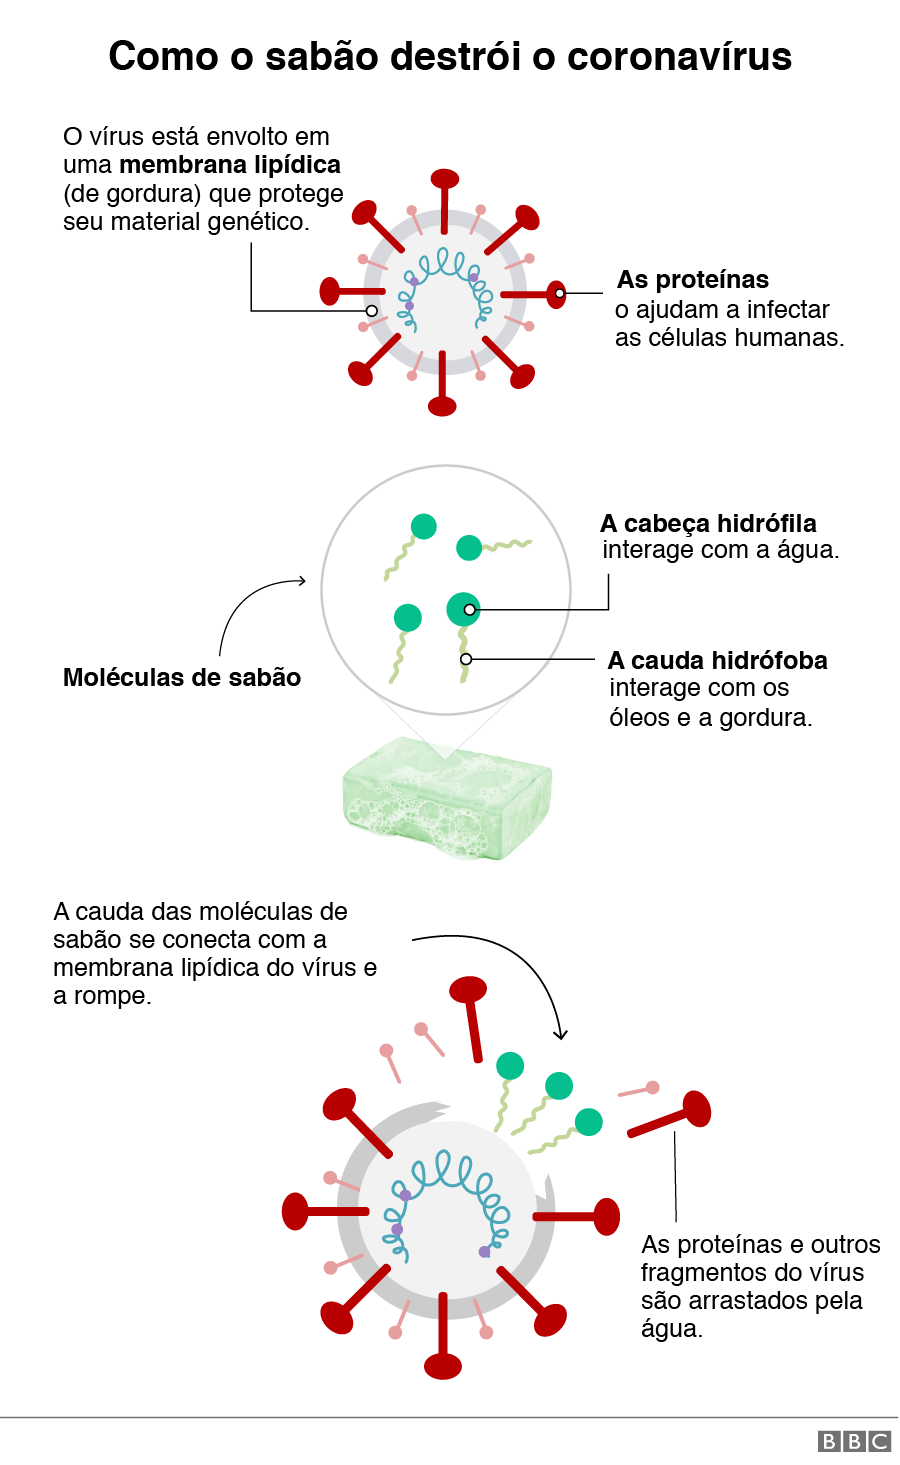 Representação gráfica de como o sabão destrói o coronavírus